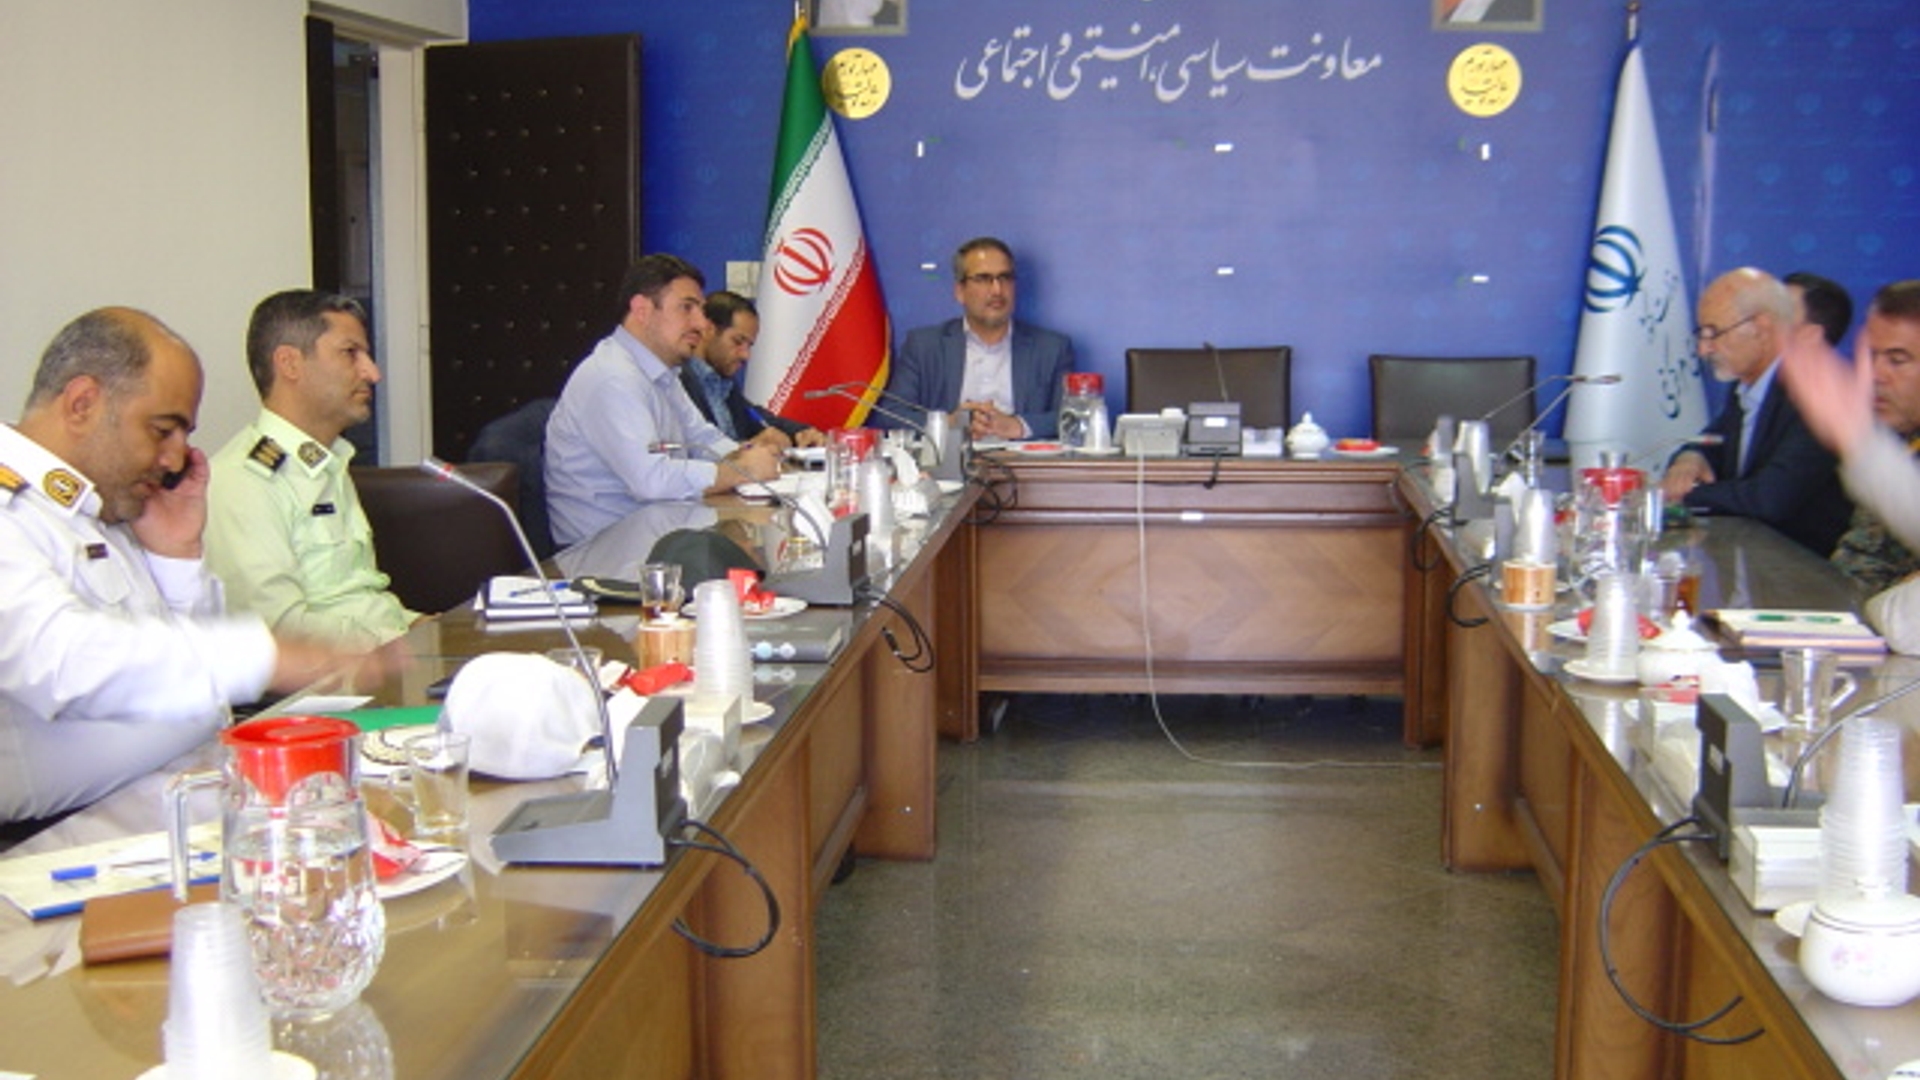 جلسه کمیسیون امنیت ورزش استان در ساعت 10 صبح روز سه شنبه مورخ 5-4-1402 به ریاست آقای رحیمی تبار مدیر کل امنیتی و انتظامی برگزار گردید.